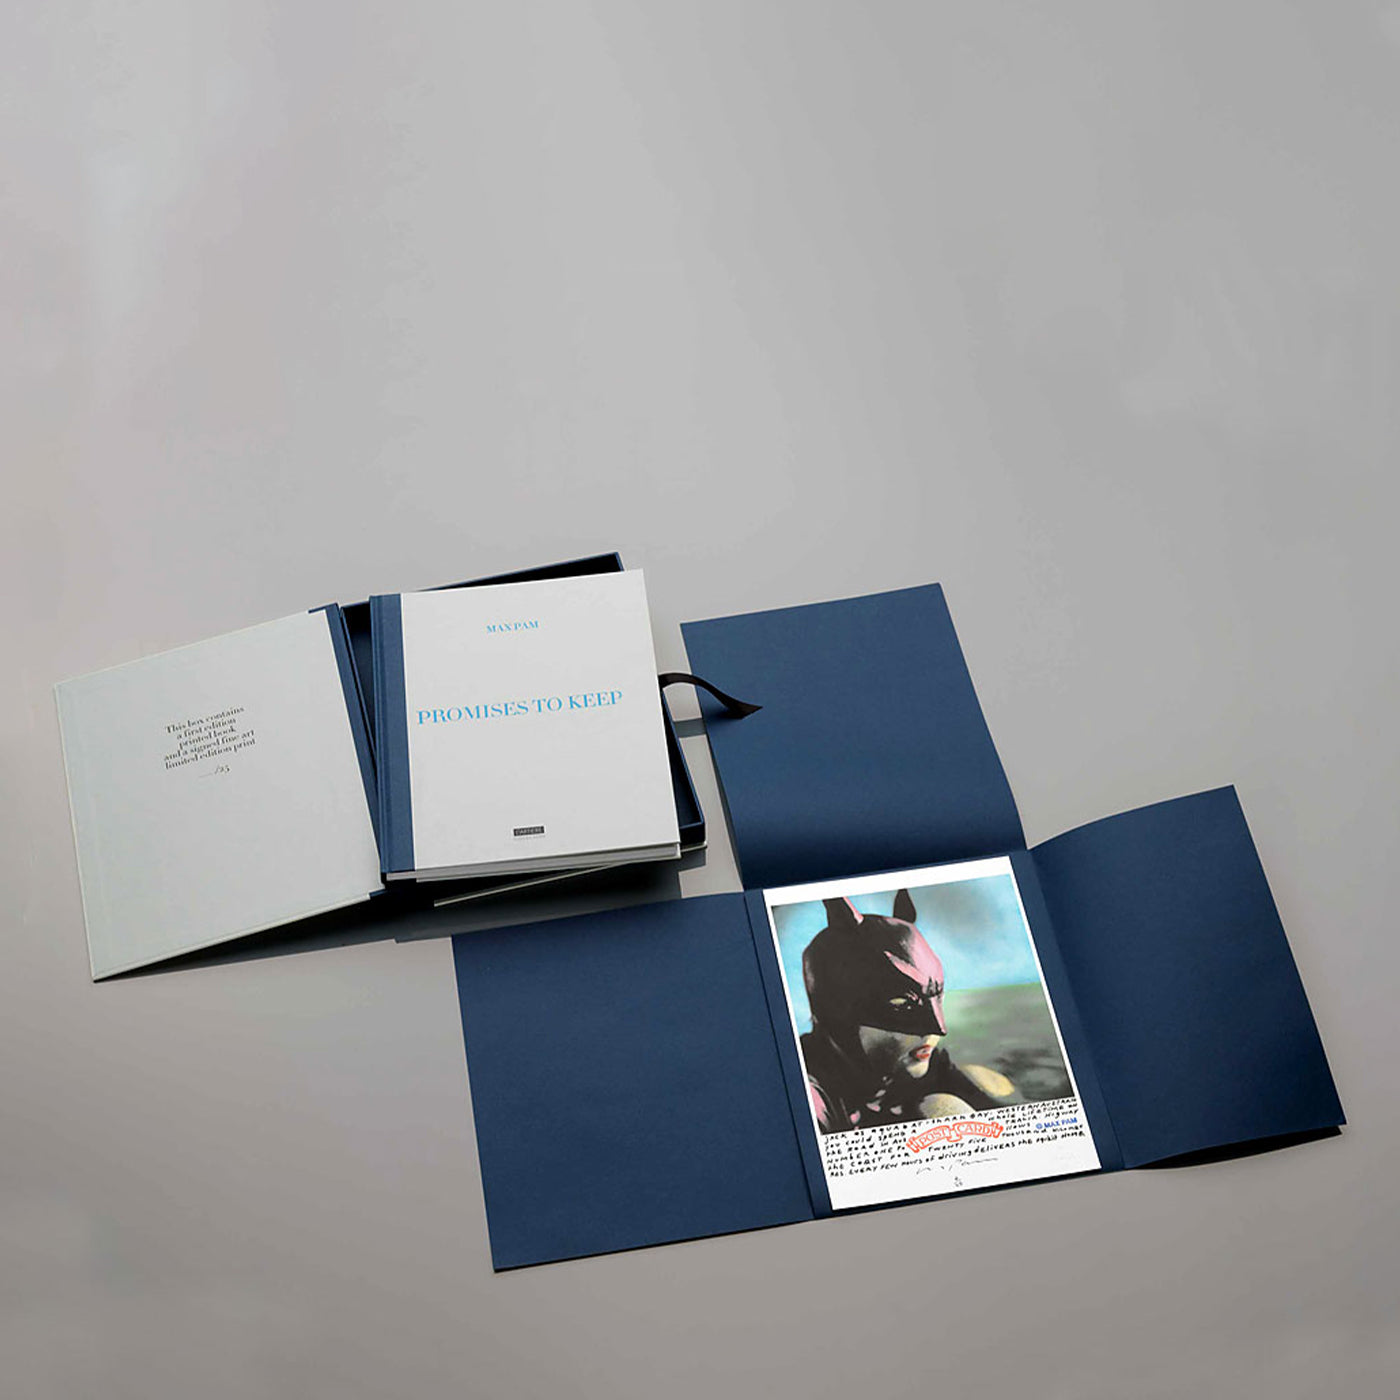 Promises to Keep - Special Edition Box Set - Max Pam - Limitierte Auflage von 25 Exemplaren - Alternative Ansicht 2